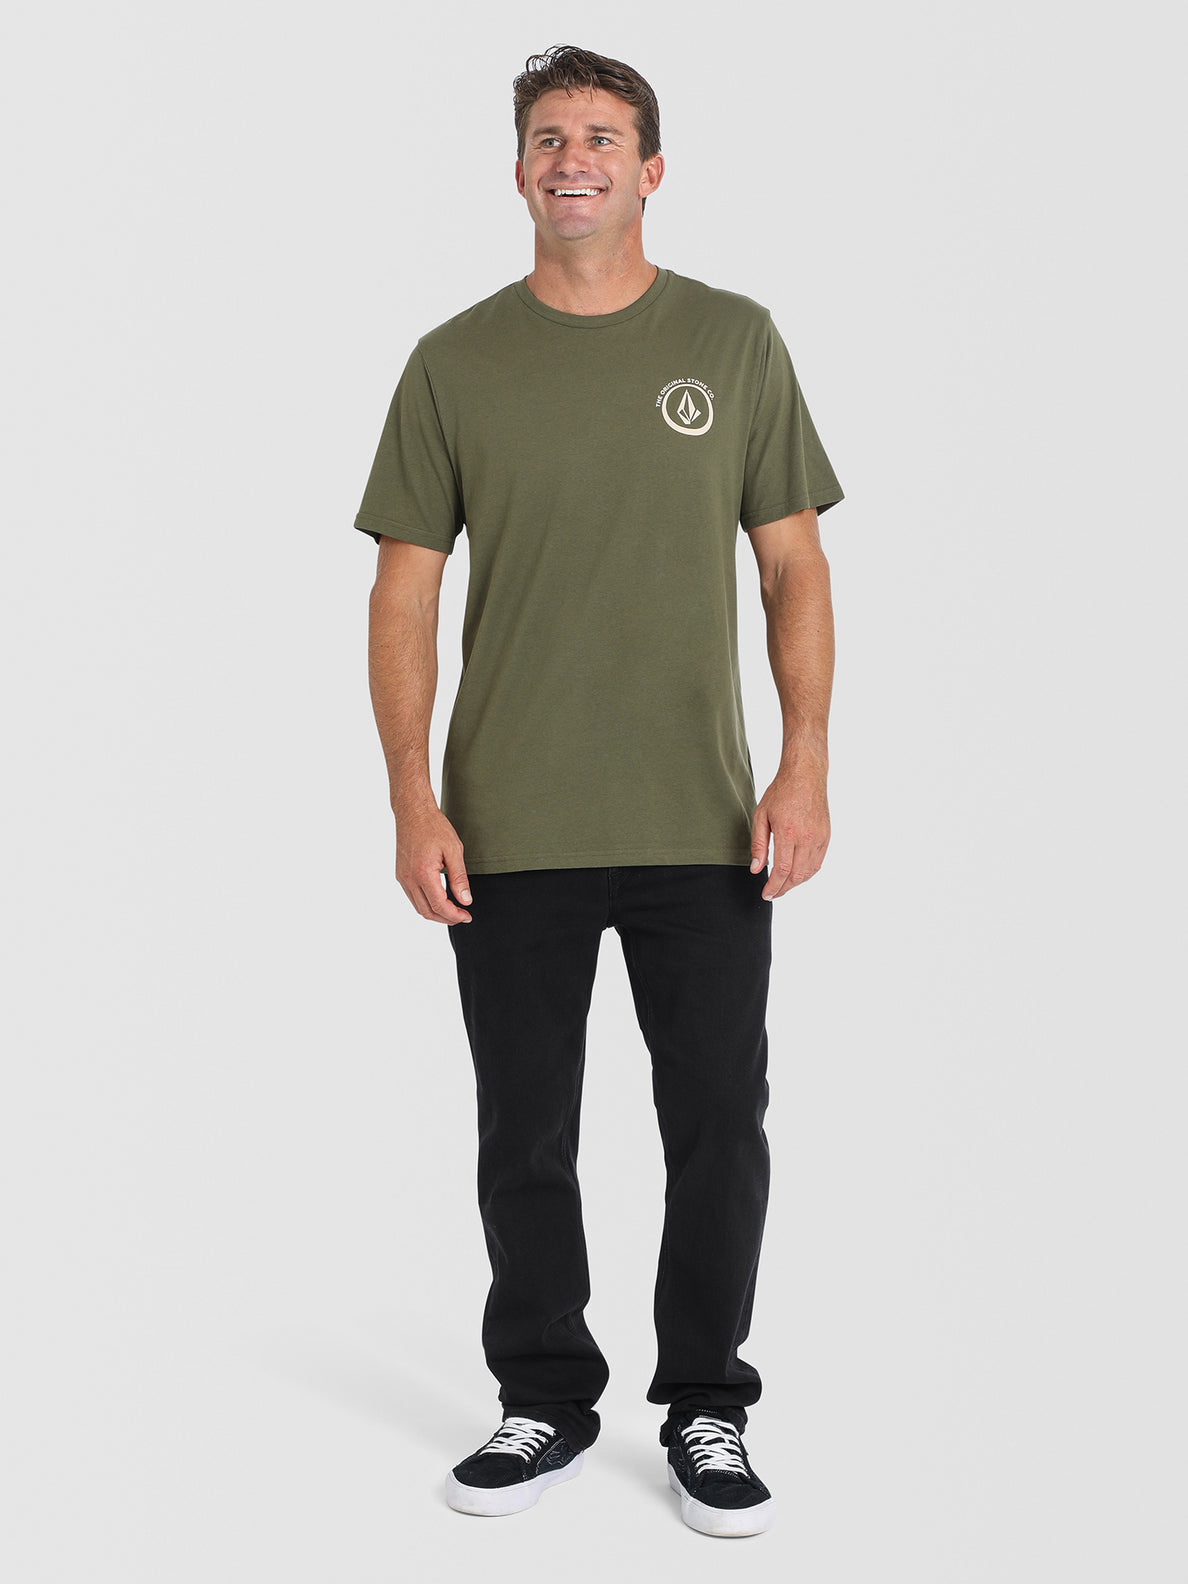 Roseton Short Sleeve T-Shirt - Military